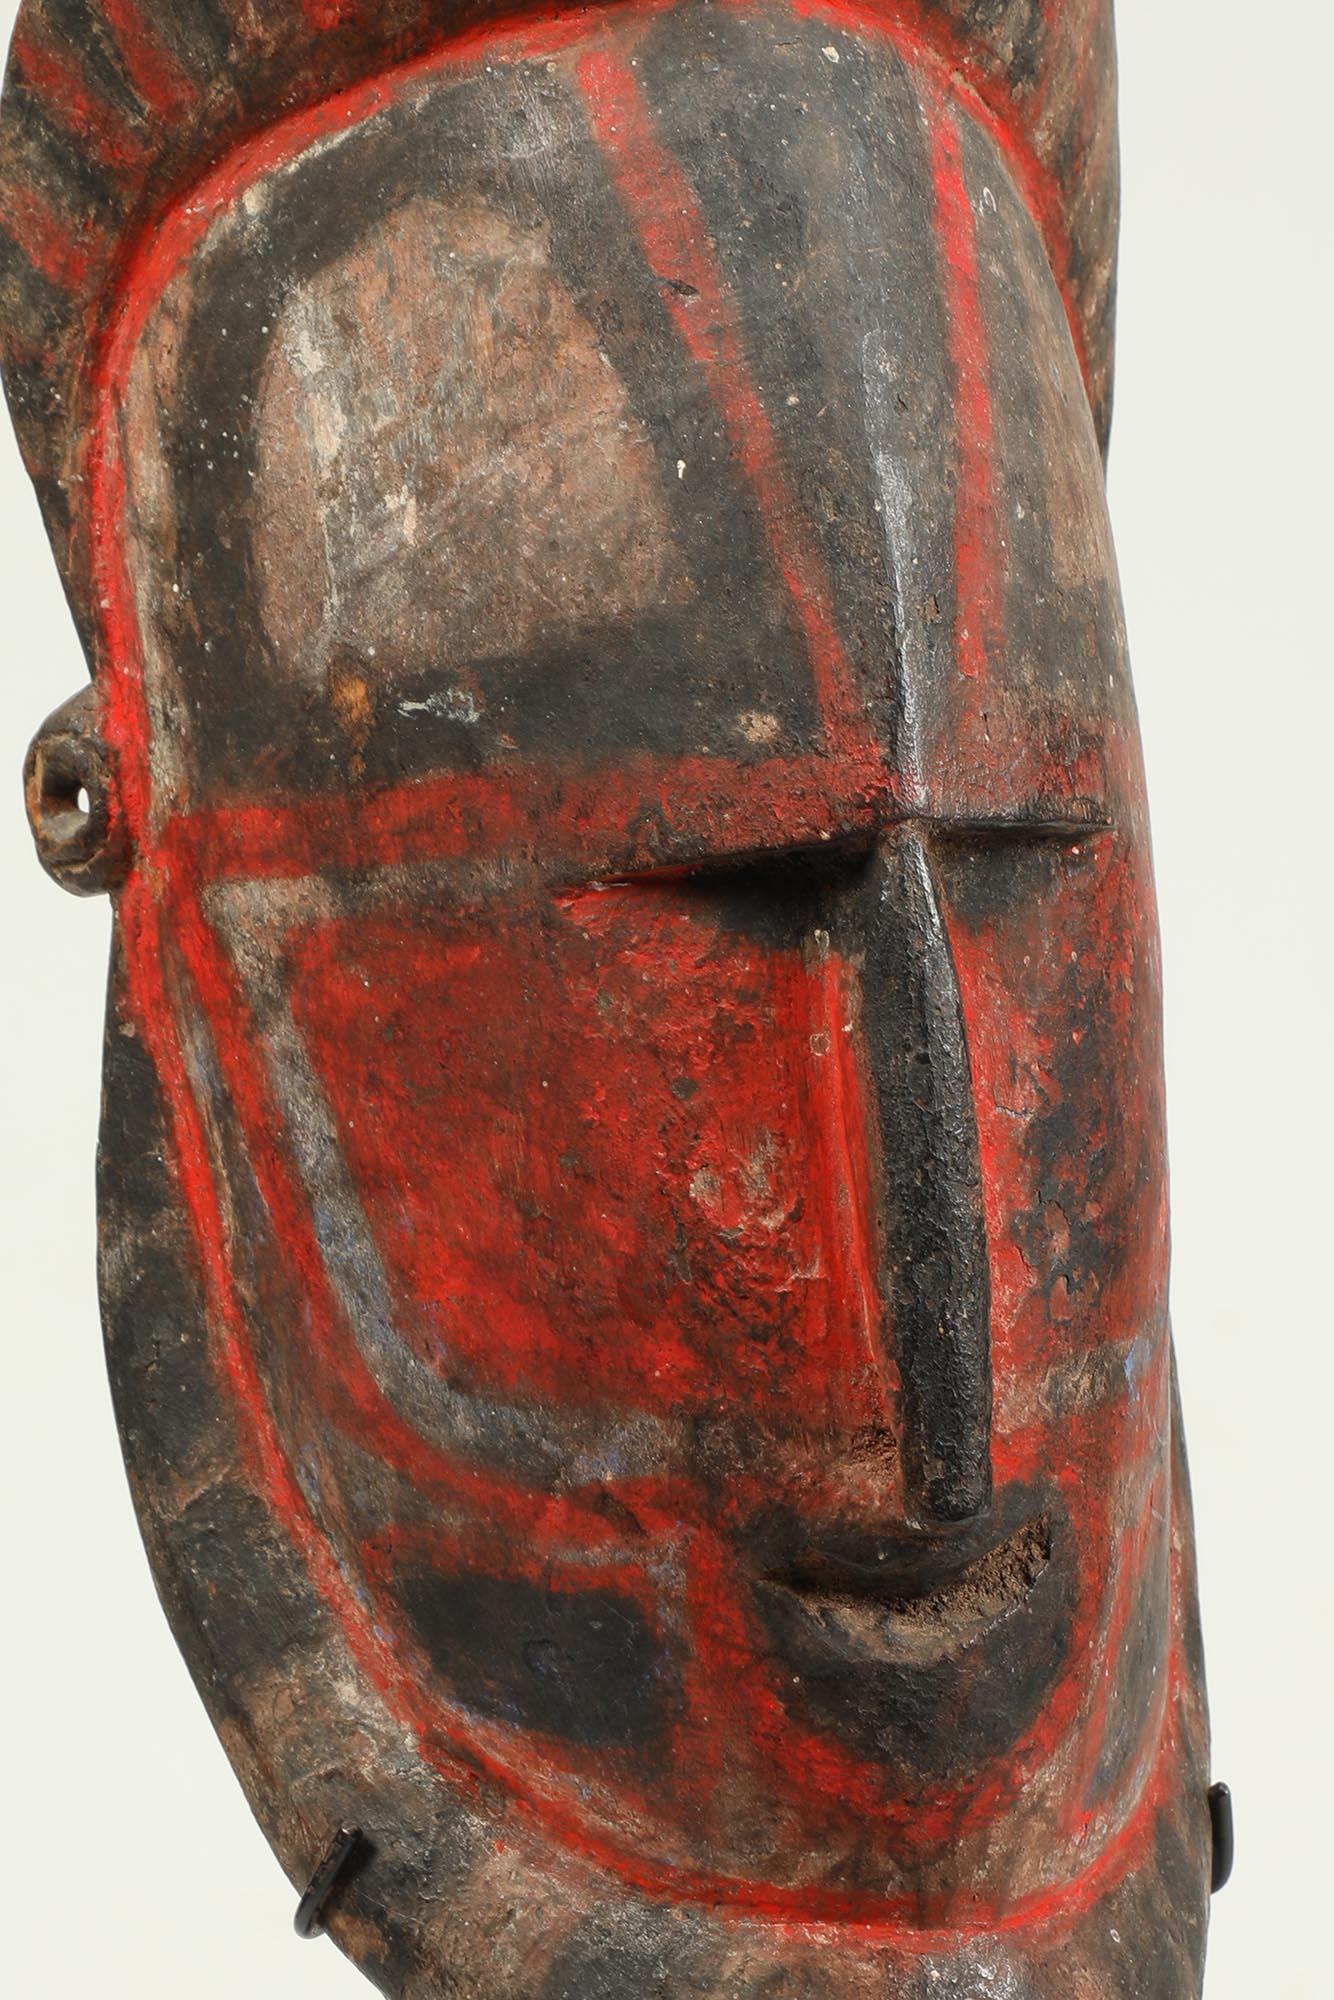 Masque d'igname Sepik en bois dur de Papouasie-Nouvelle-Guinée précoce avec des zones de pigments rouges, noirs et blancs.
Le masque mesure 10 pouces de haut, sur une base métallique personnalisée, la hauteur totale est de 12 1/2 pouces.

